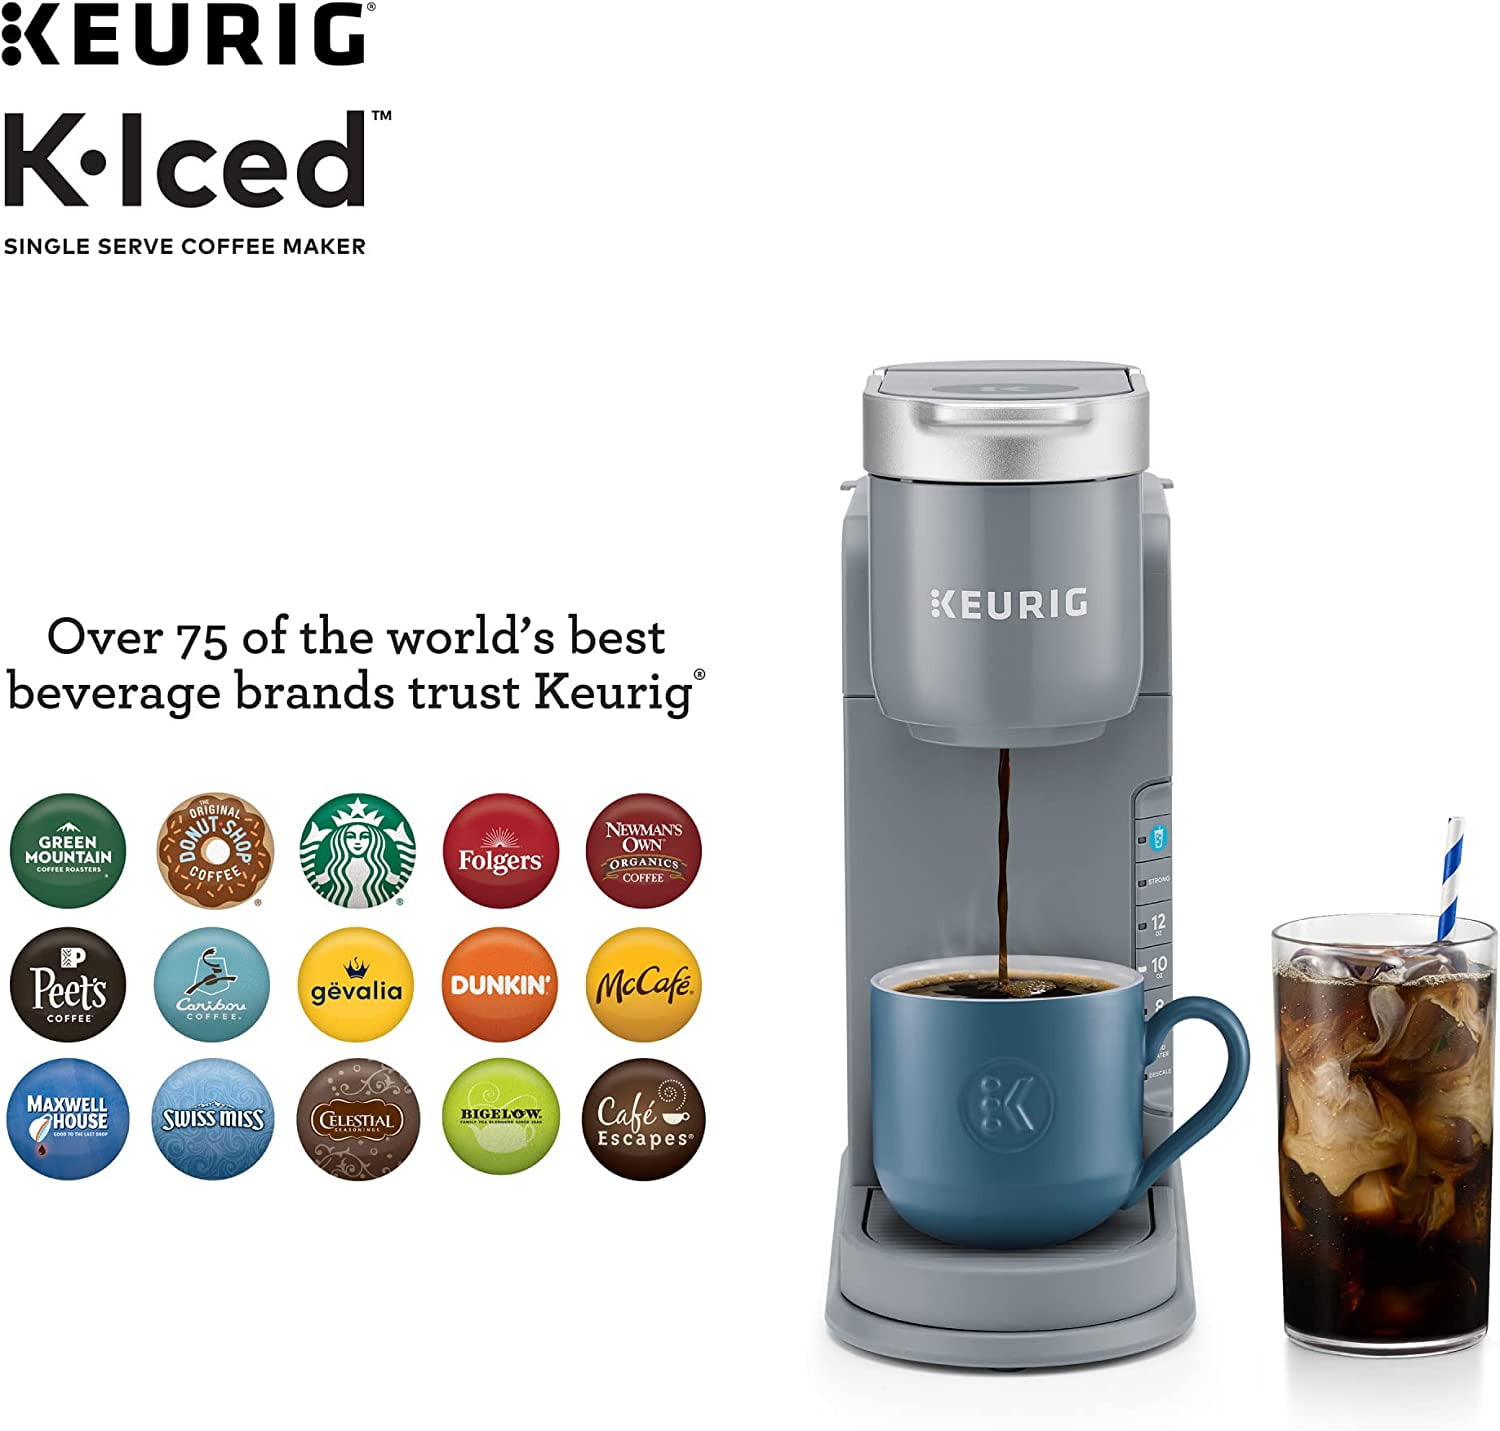 Keurig K-Slim+Iced Single Service Coffee Maker, Artic Gray Bundle